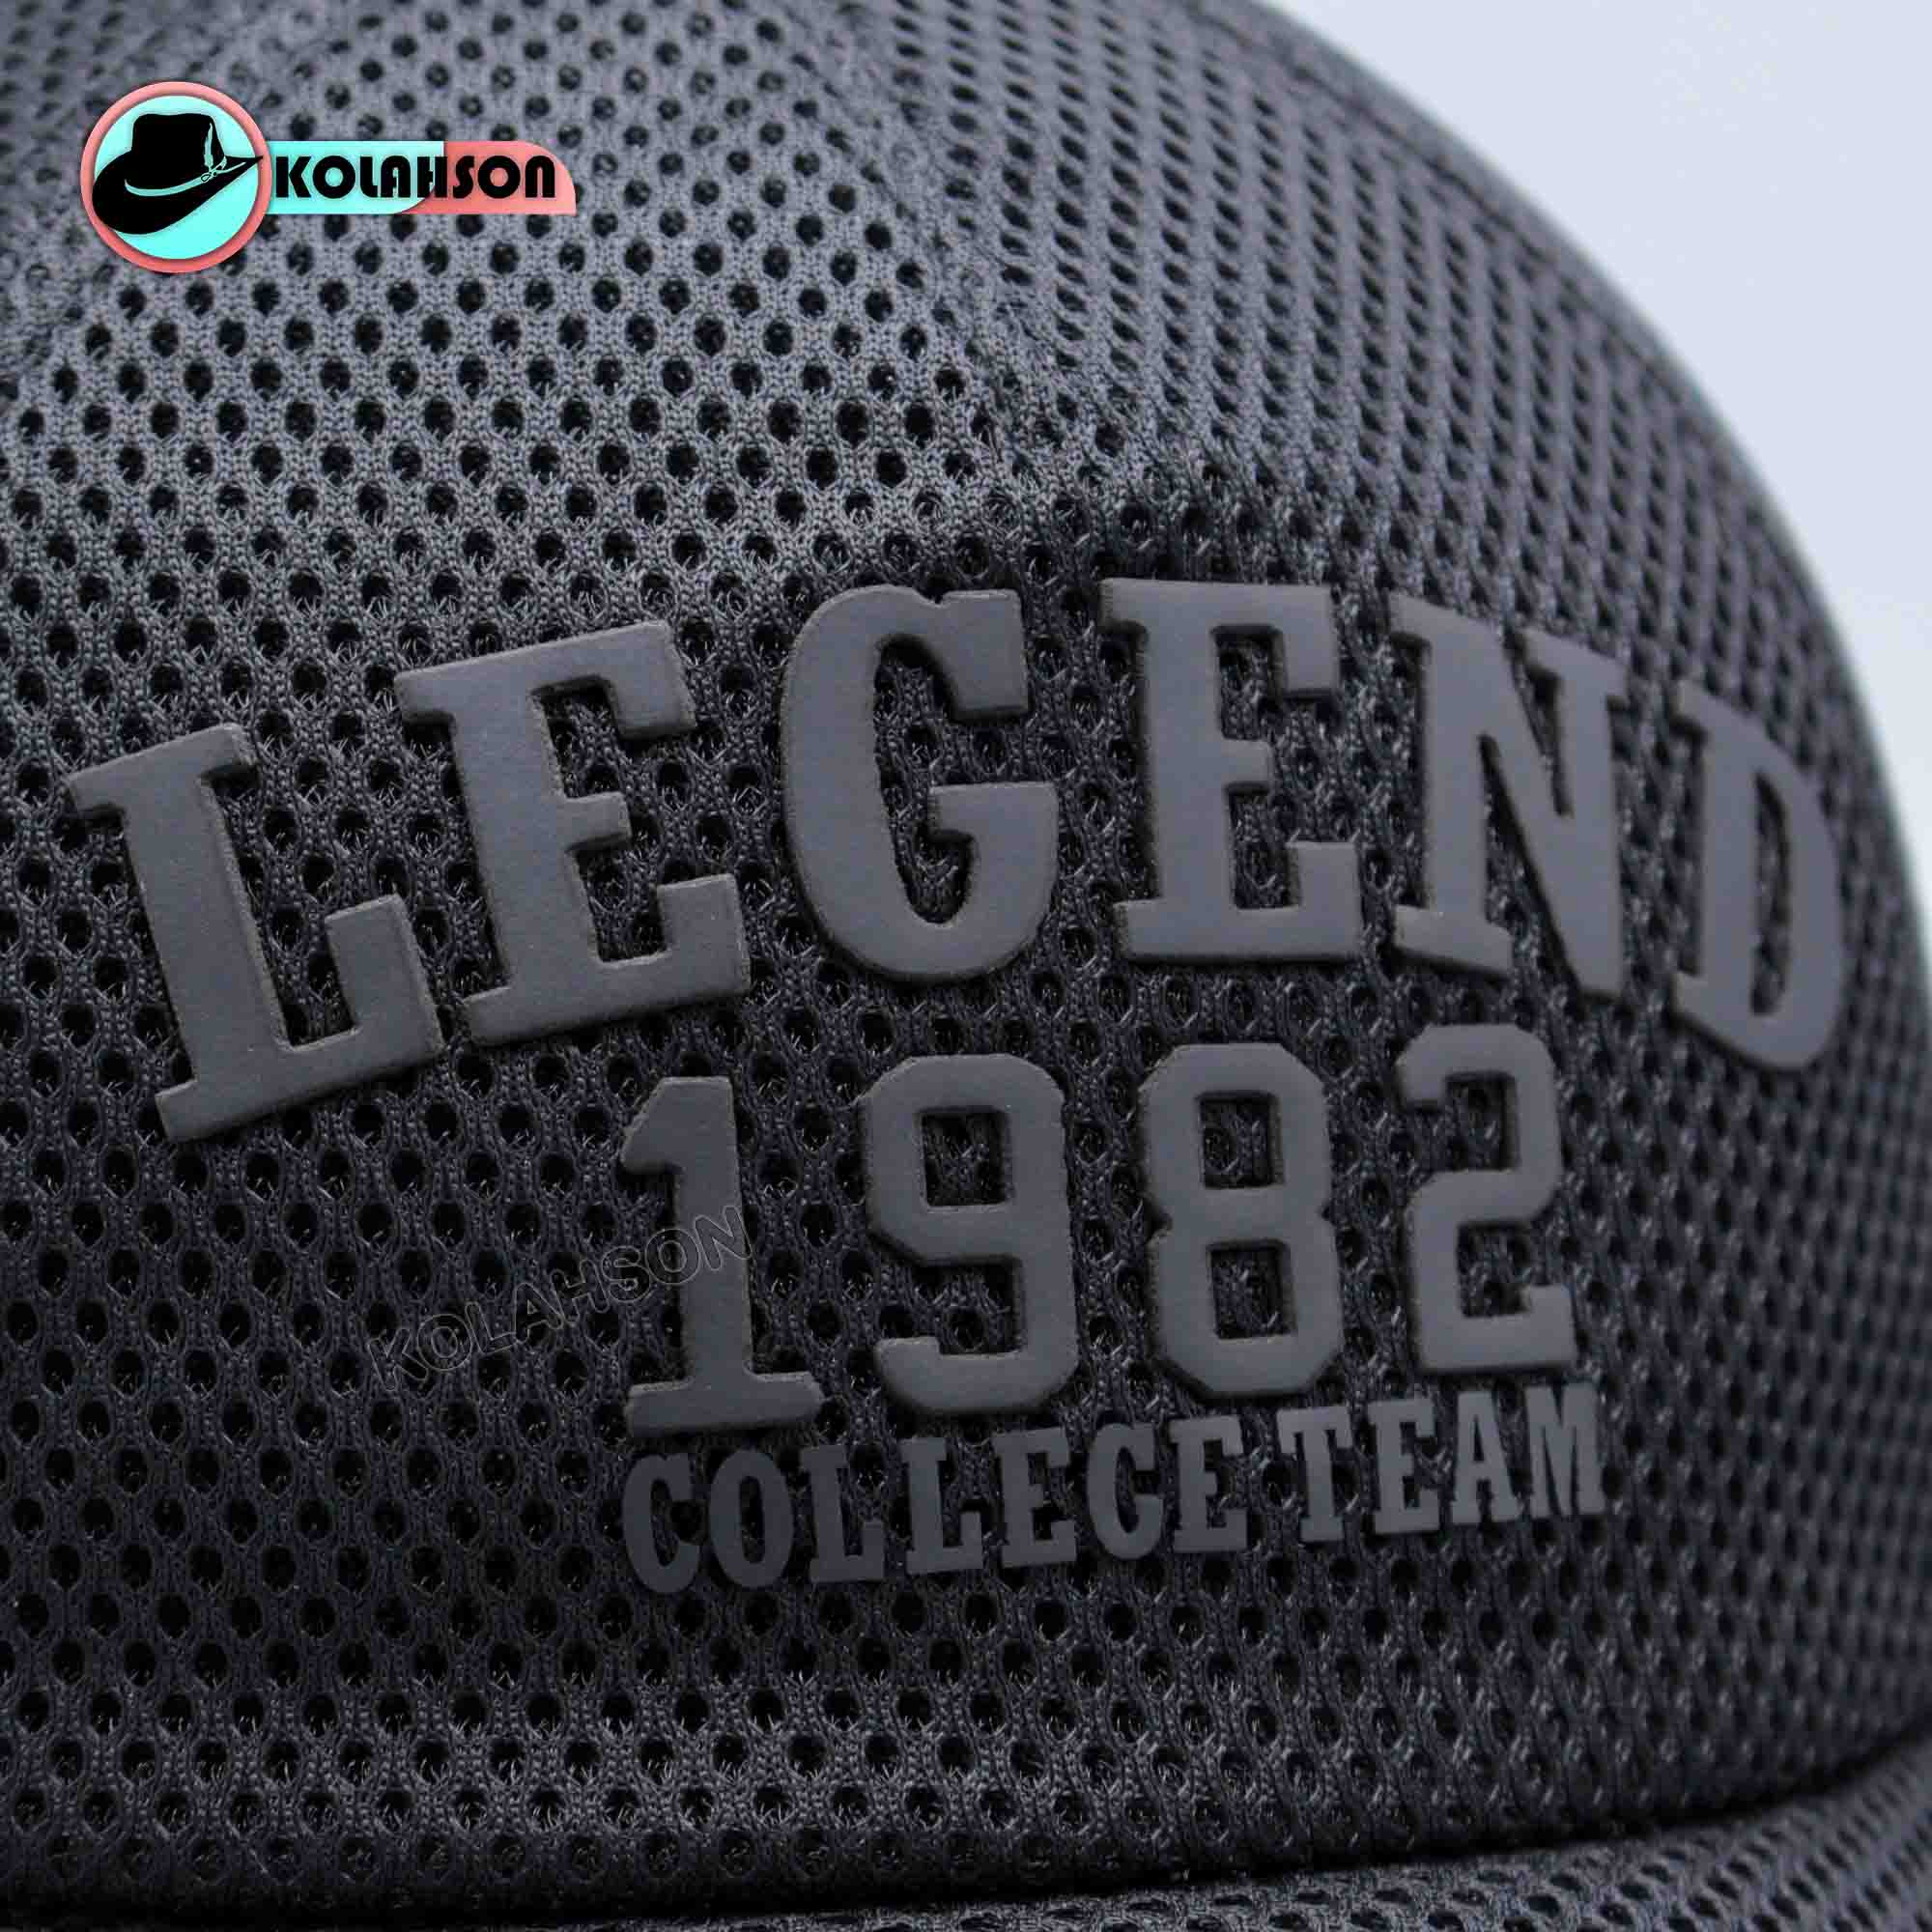 کلاه بیسبالی طرح Legend 1982